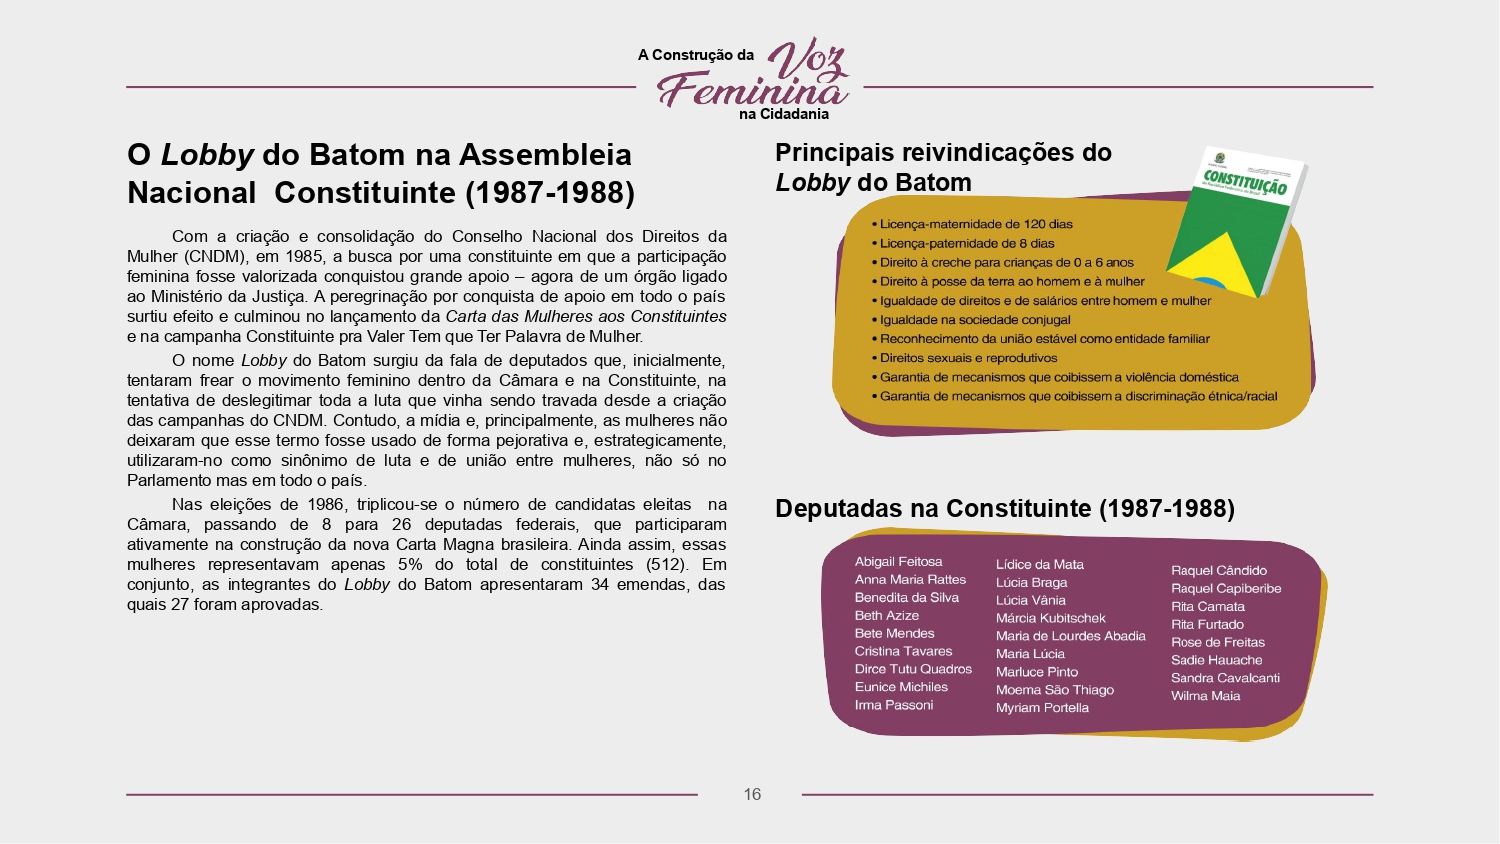 Contrução da Voz Feminina na Cidadania_page-0016